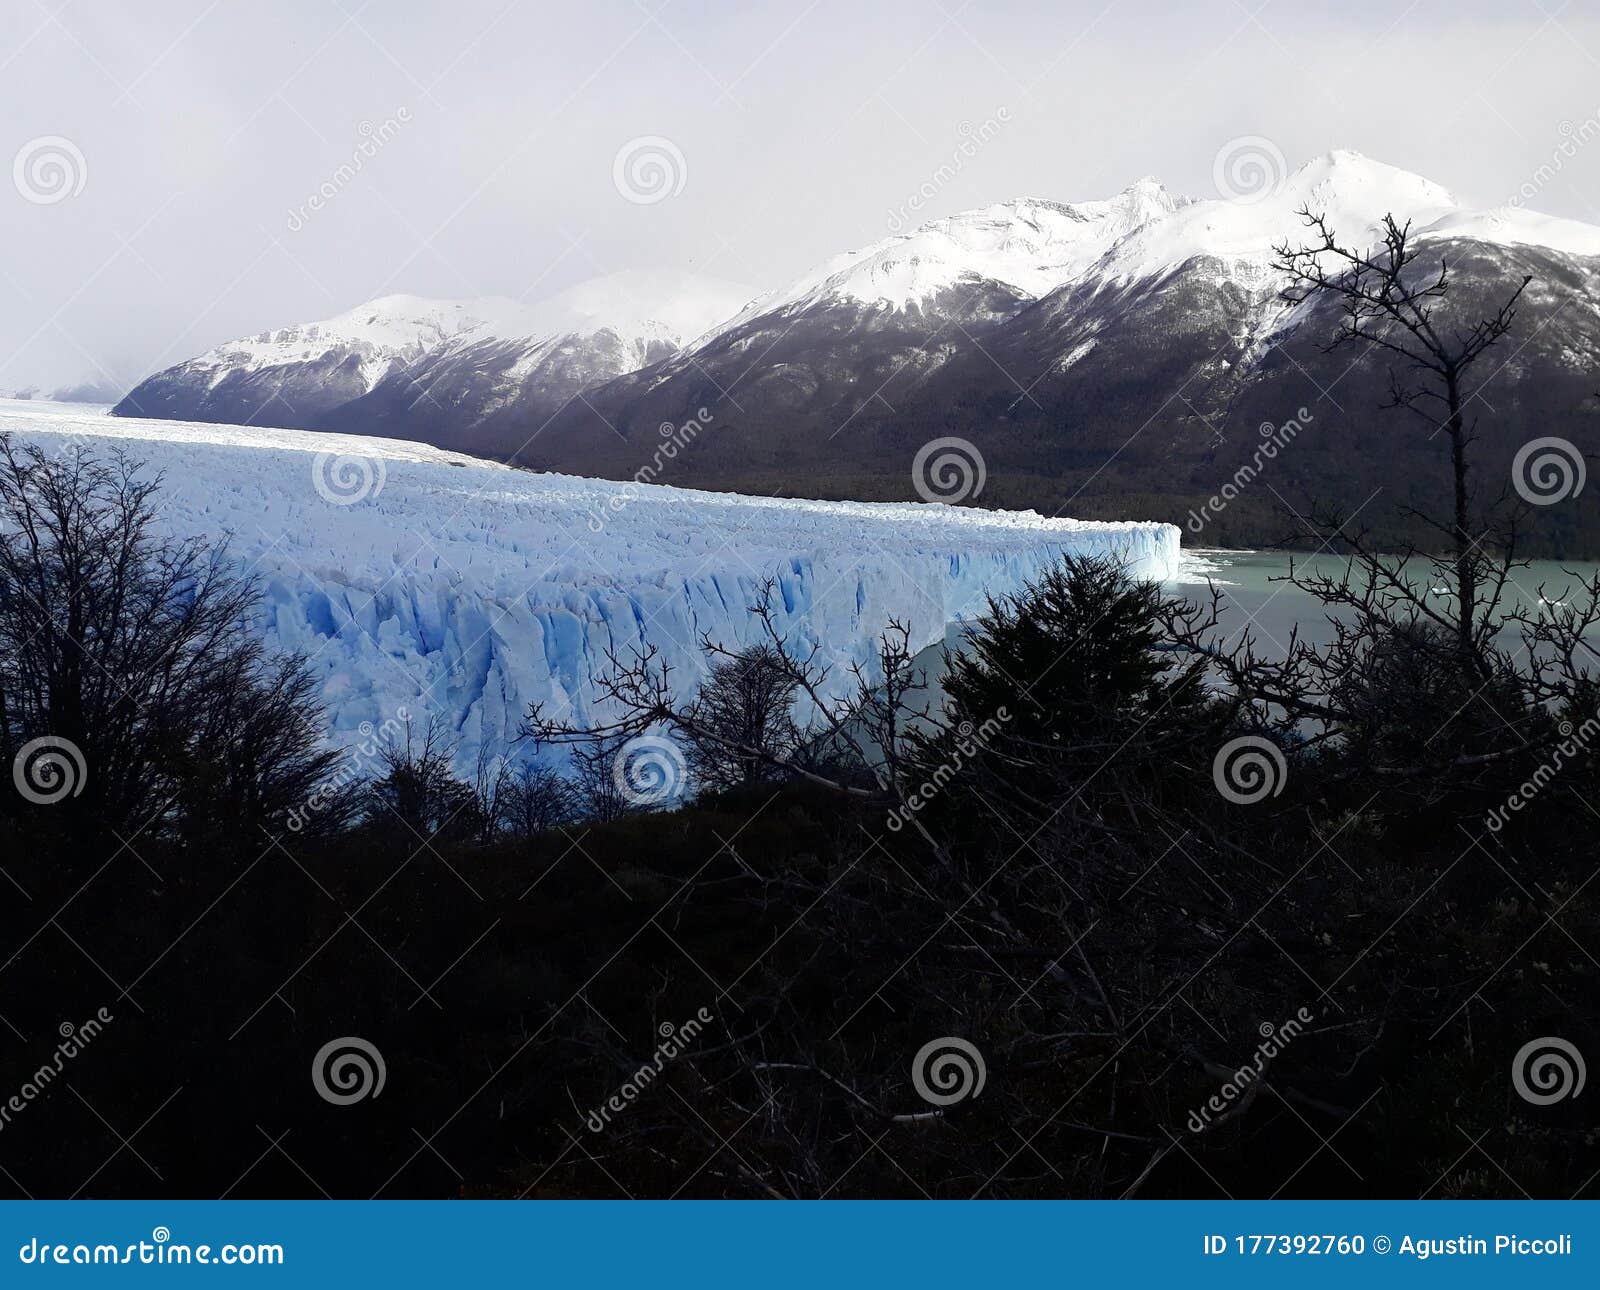 argentina, south, glacier, perito moreno